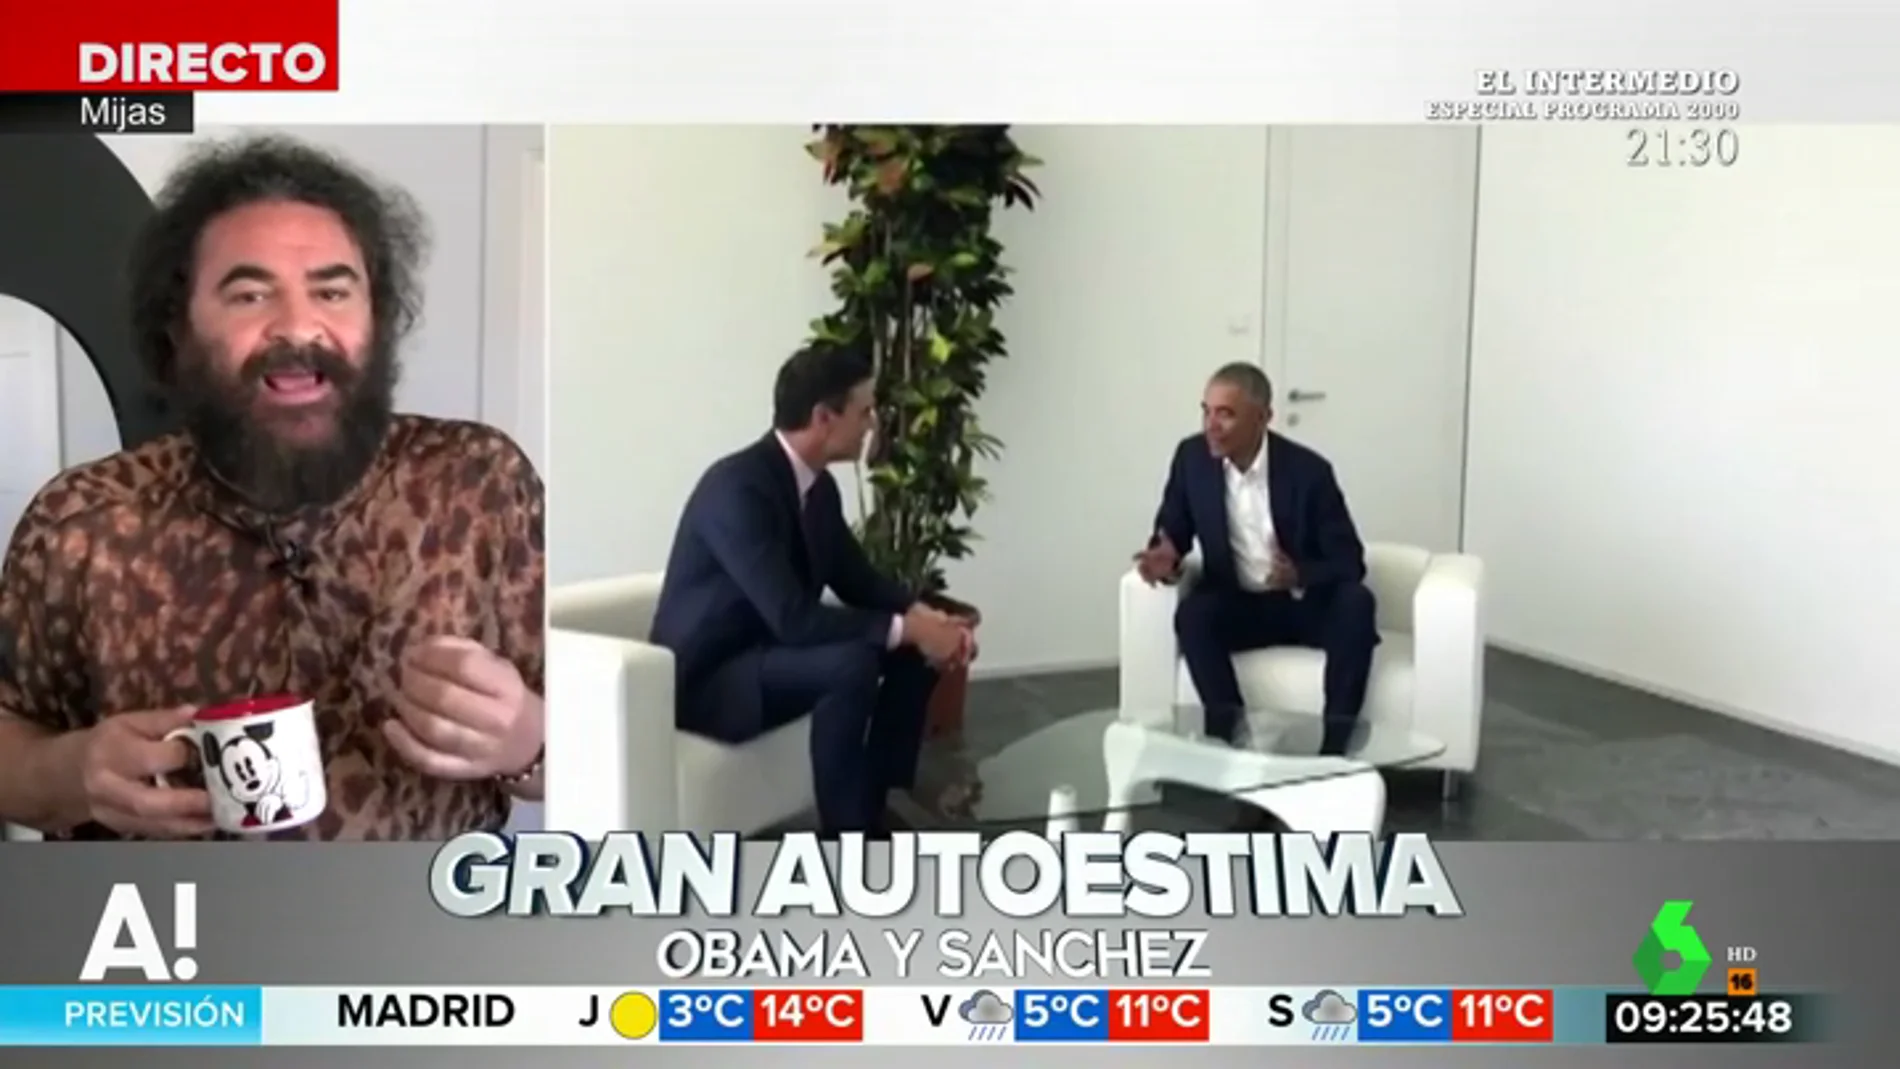 El análisis de El Sevilla sobre el encuentro entre Sánchez y Obama: "Pedro se quiere mucho al compararse con él"